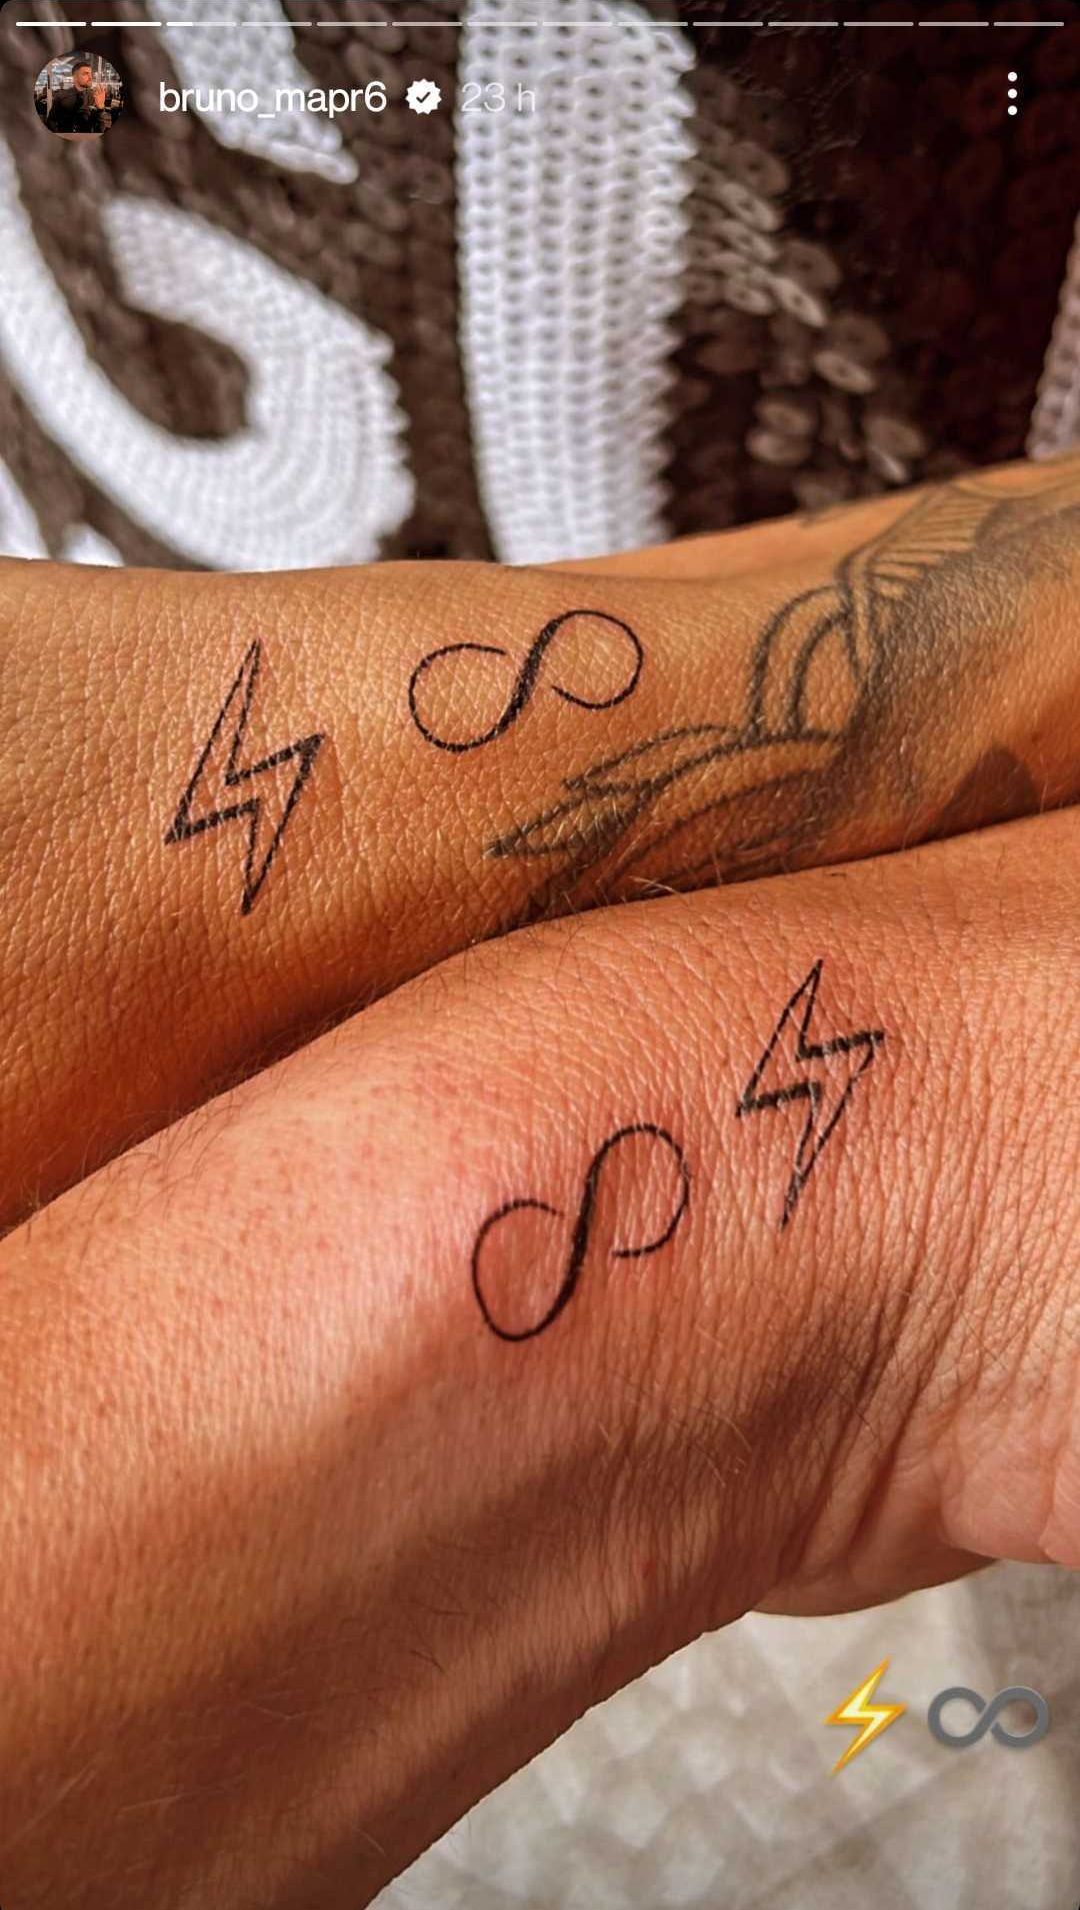 Bruno et Jennifer (MAPR) se font un tatouage en commun : Alicia réagit !